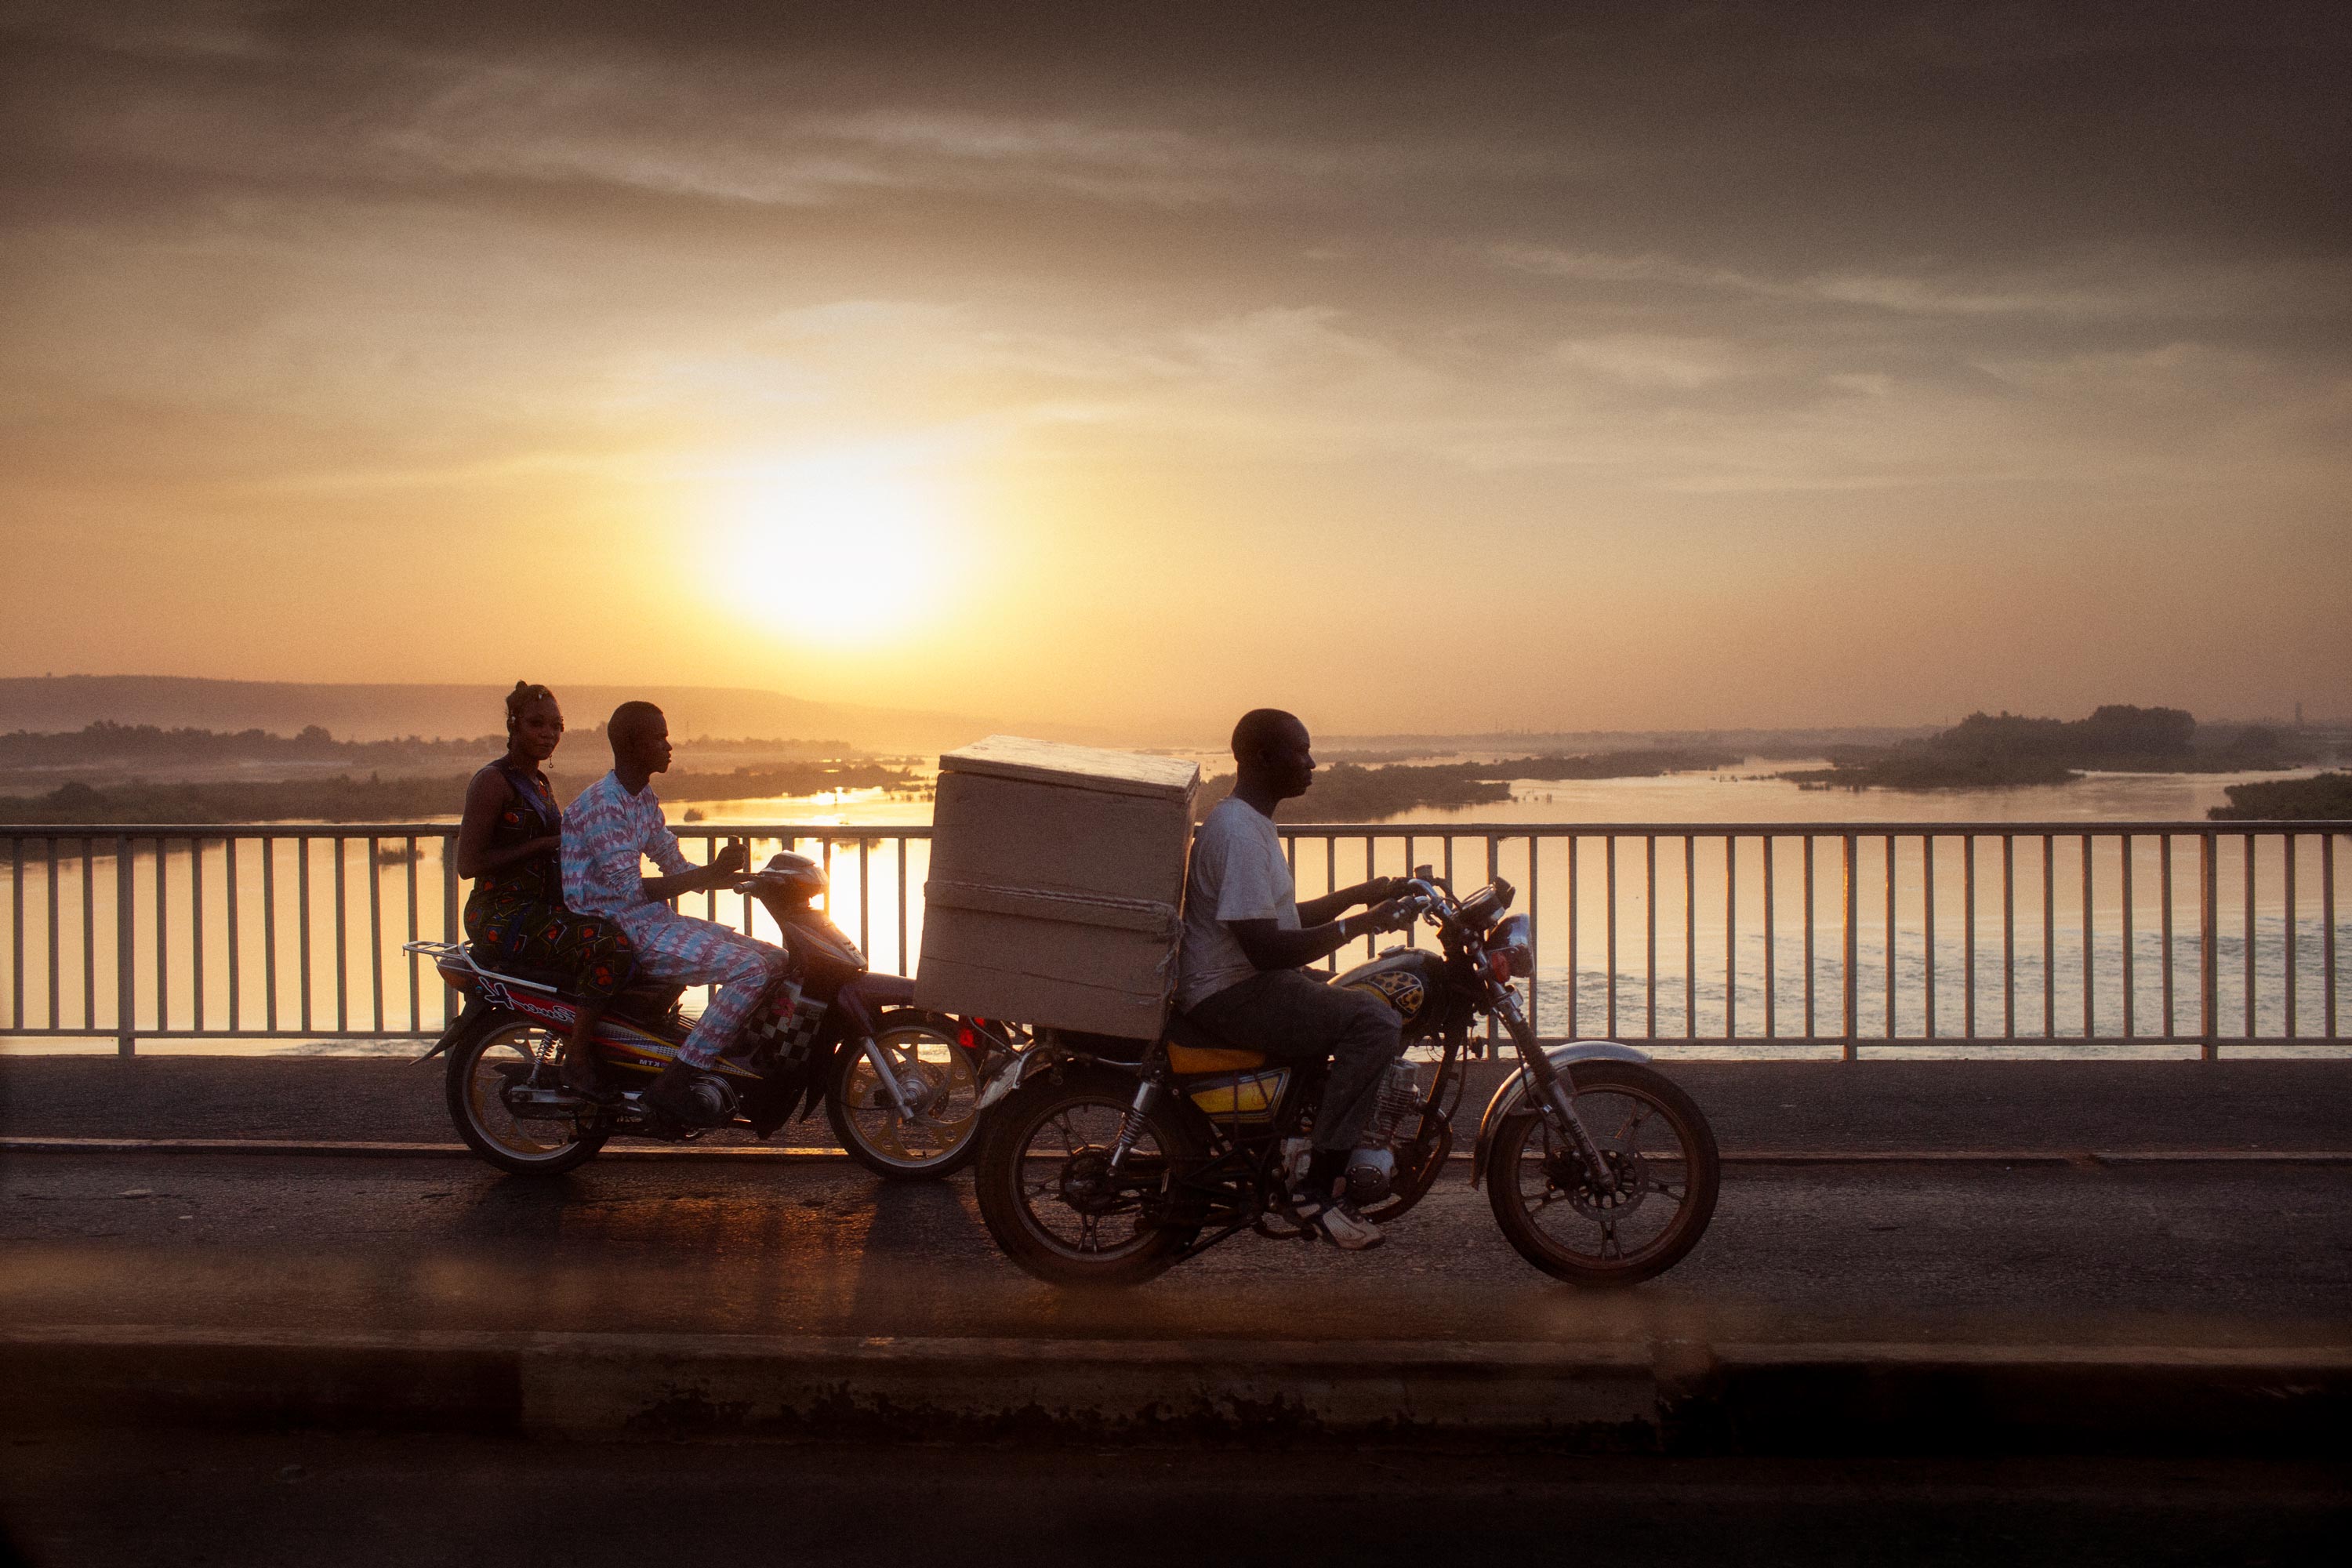 Abendstimmung auf einer Flussbrücke in Mali Afrika - Motorradfahrer bei Sonnenuntergang